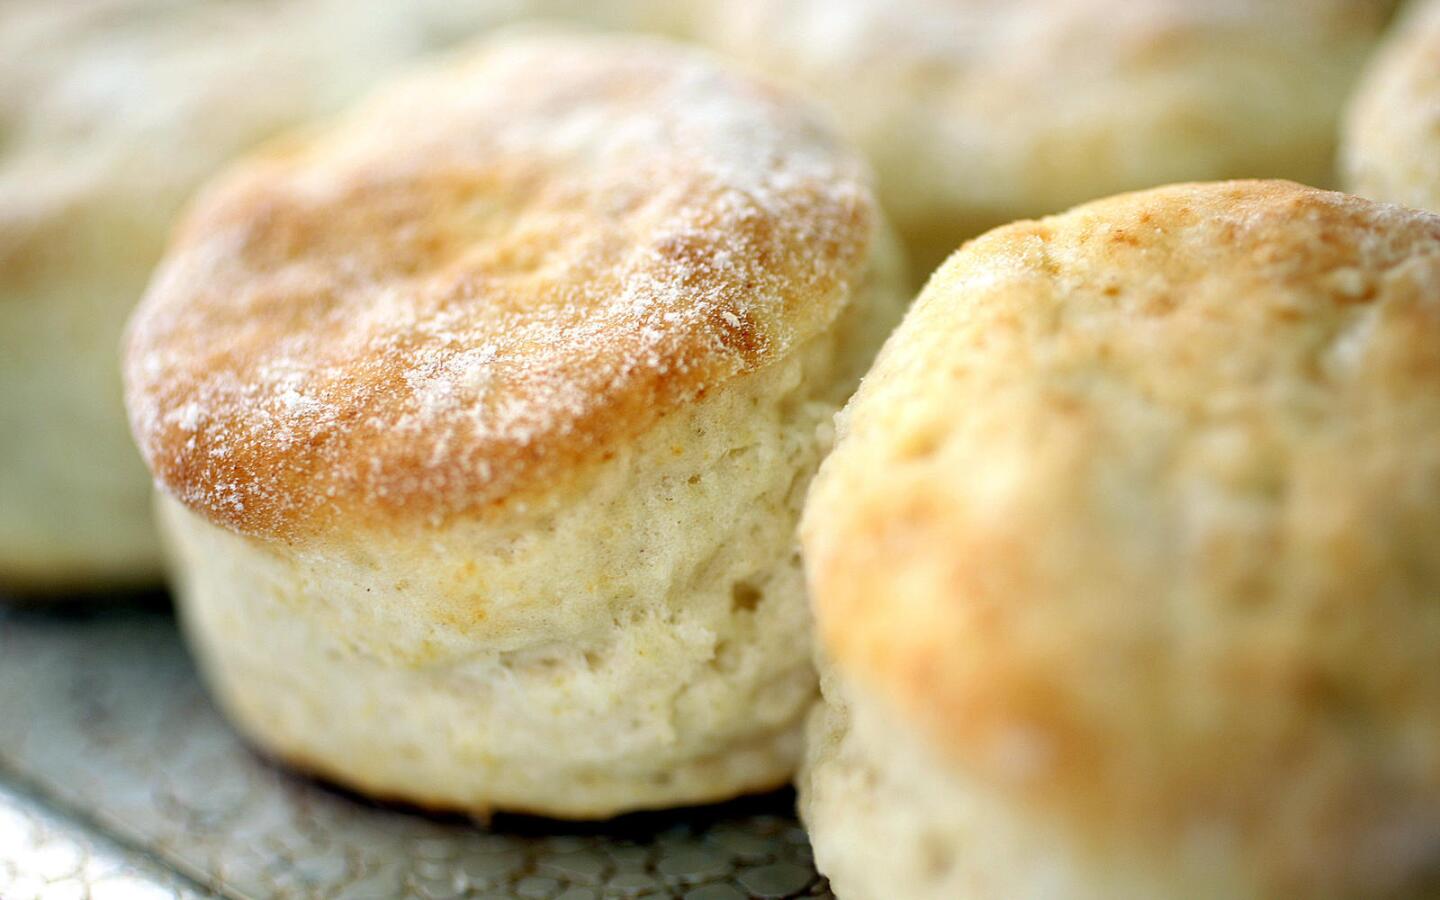 Best all-around biscuit